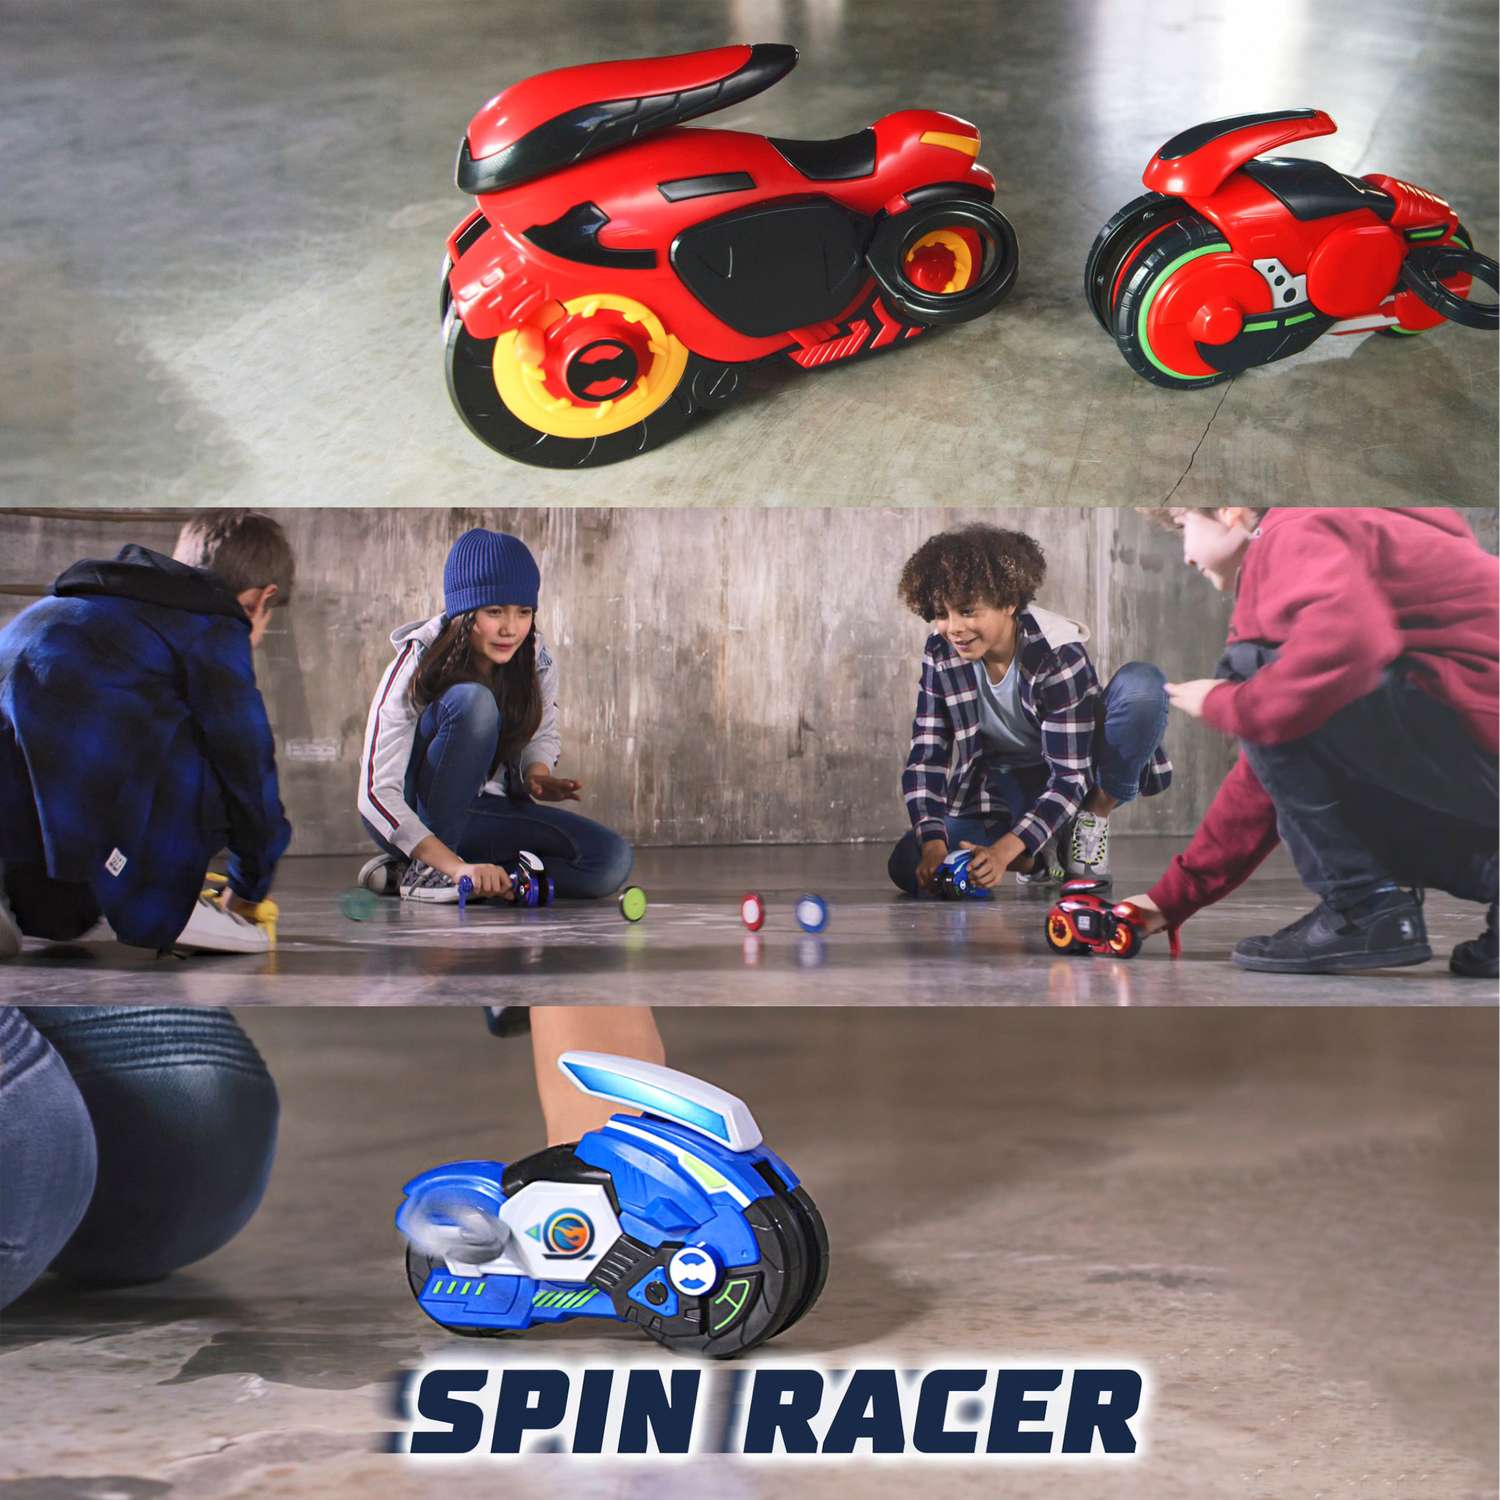 Игровой набор Hot Wheels Spin Racer Deluxe Set 2 игрушечных мотоцикла с колесами-гироскопами Т19375 - фото 4